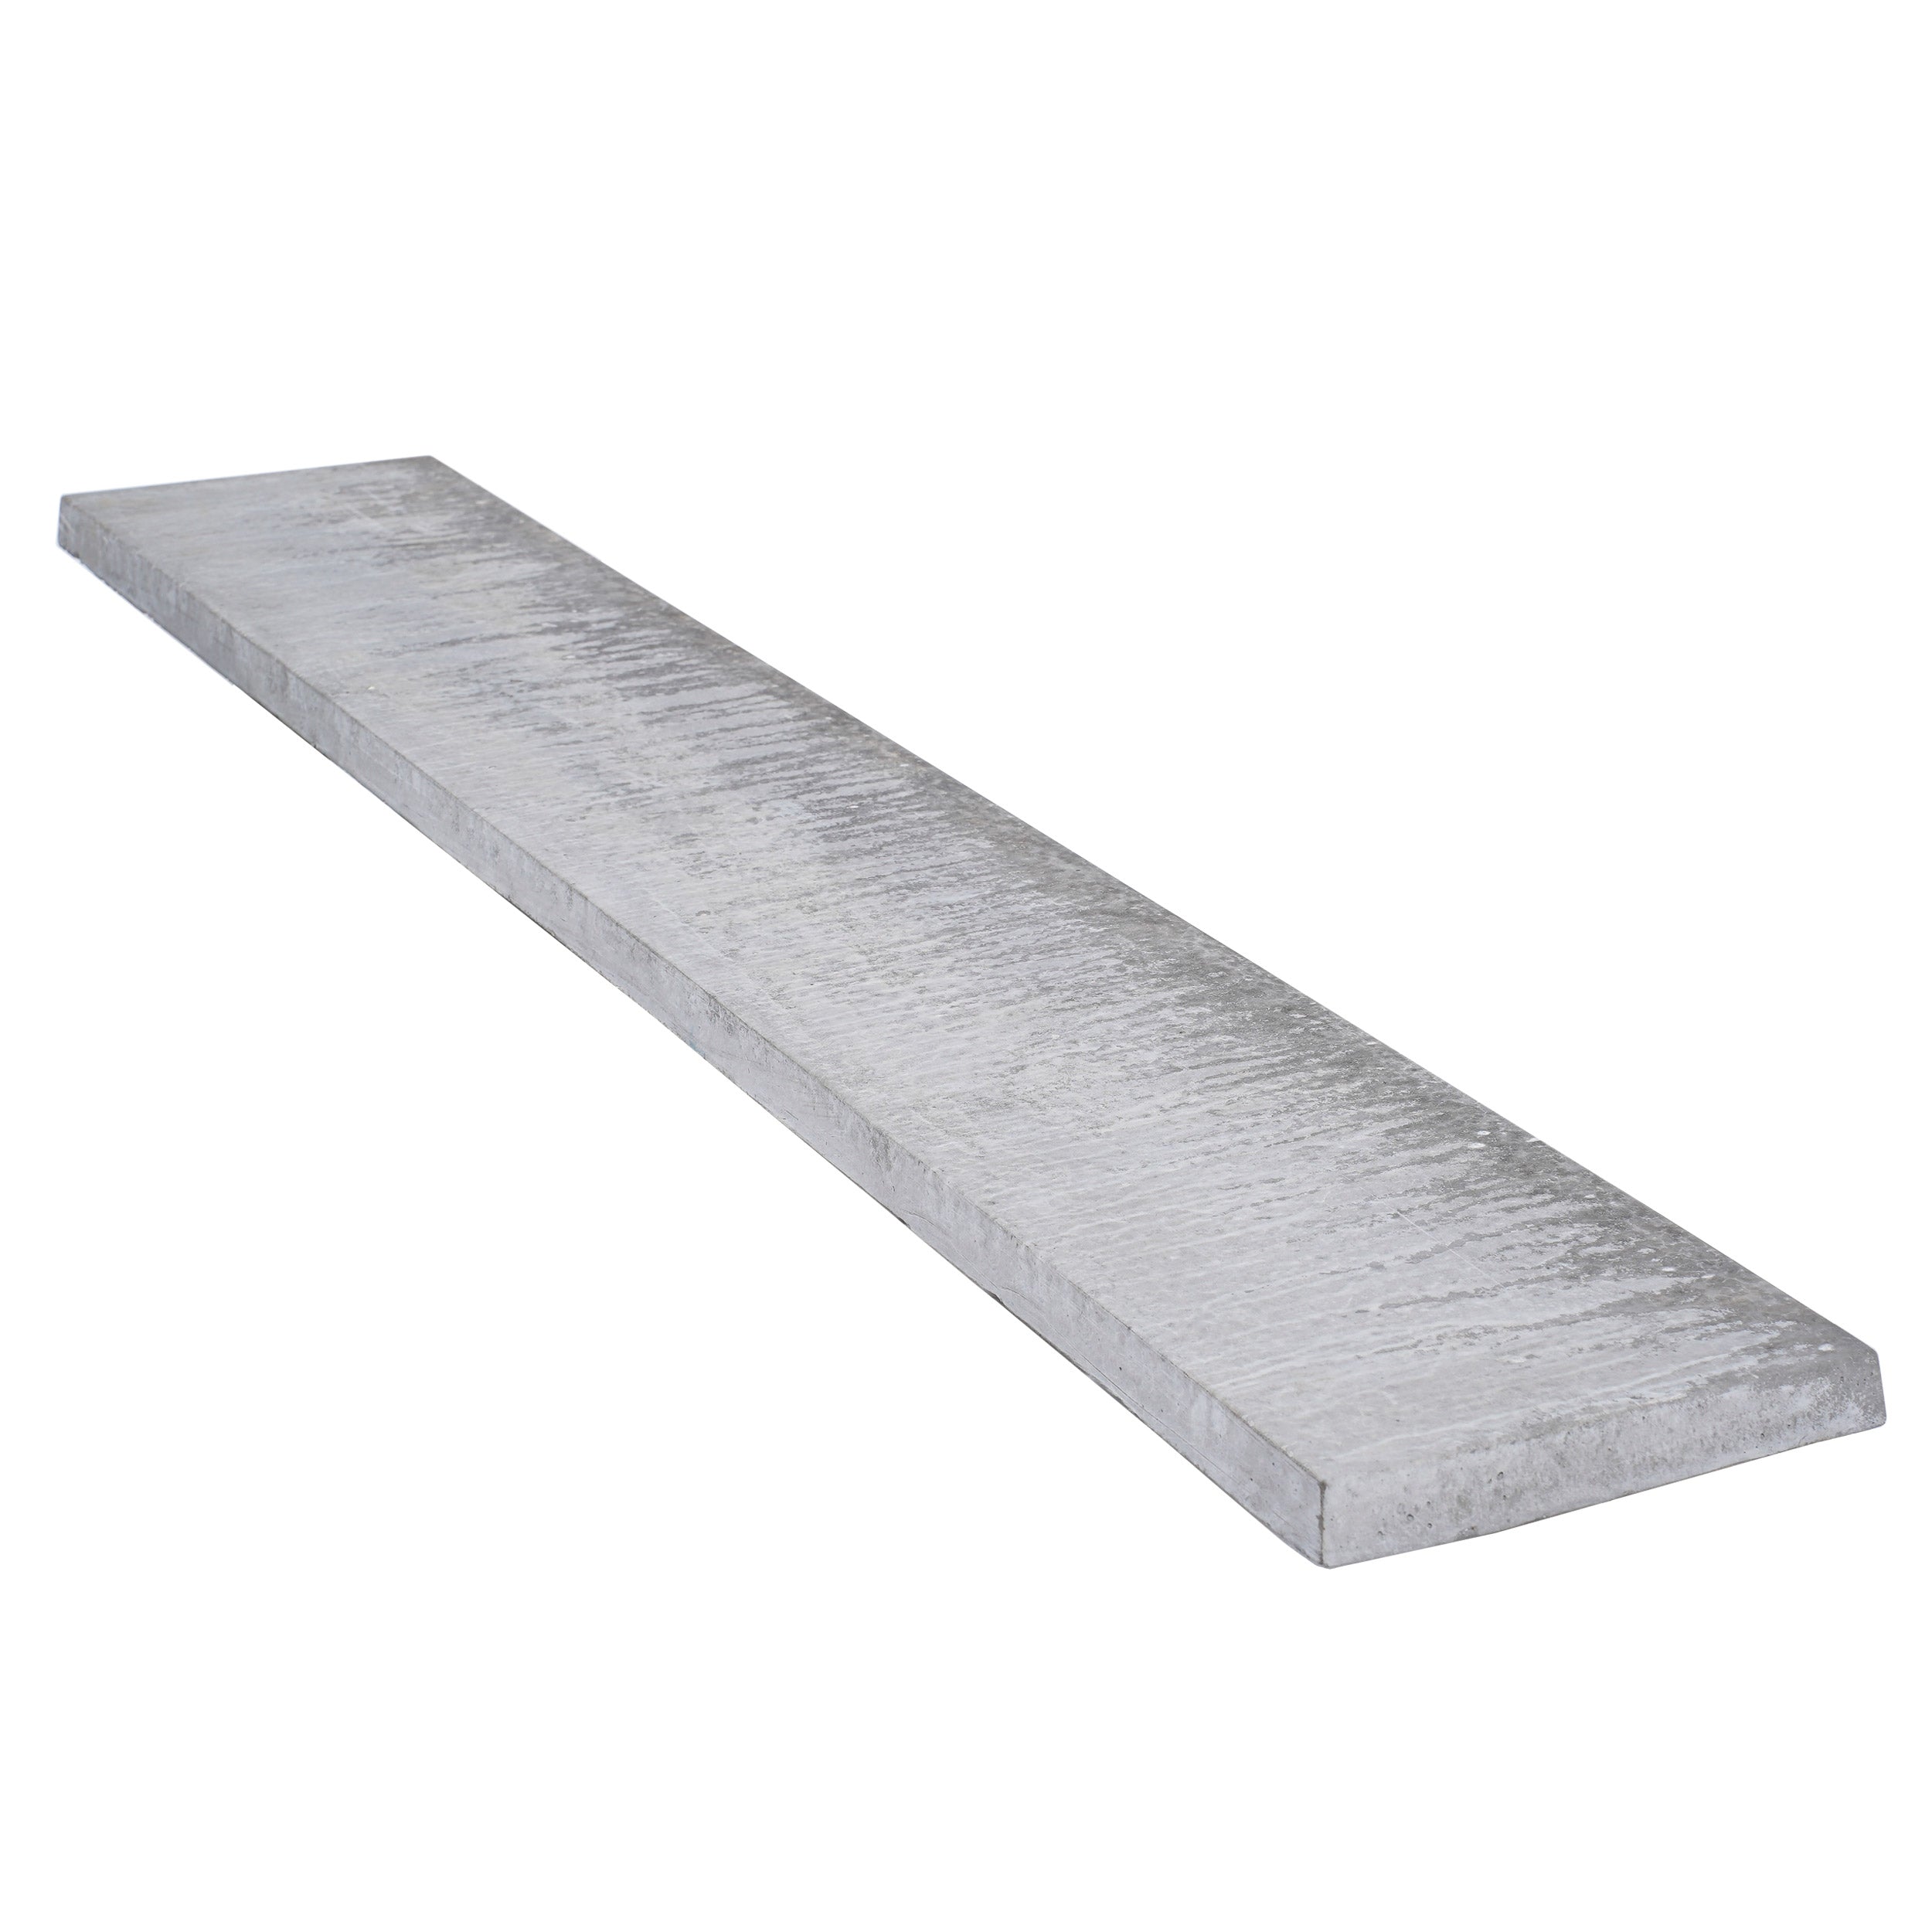 12 Inch Solid Concrete Gravel Board 